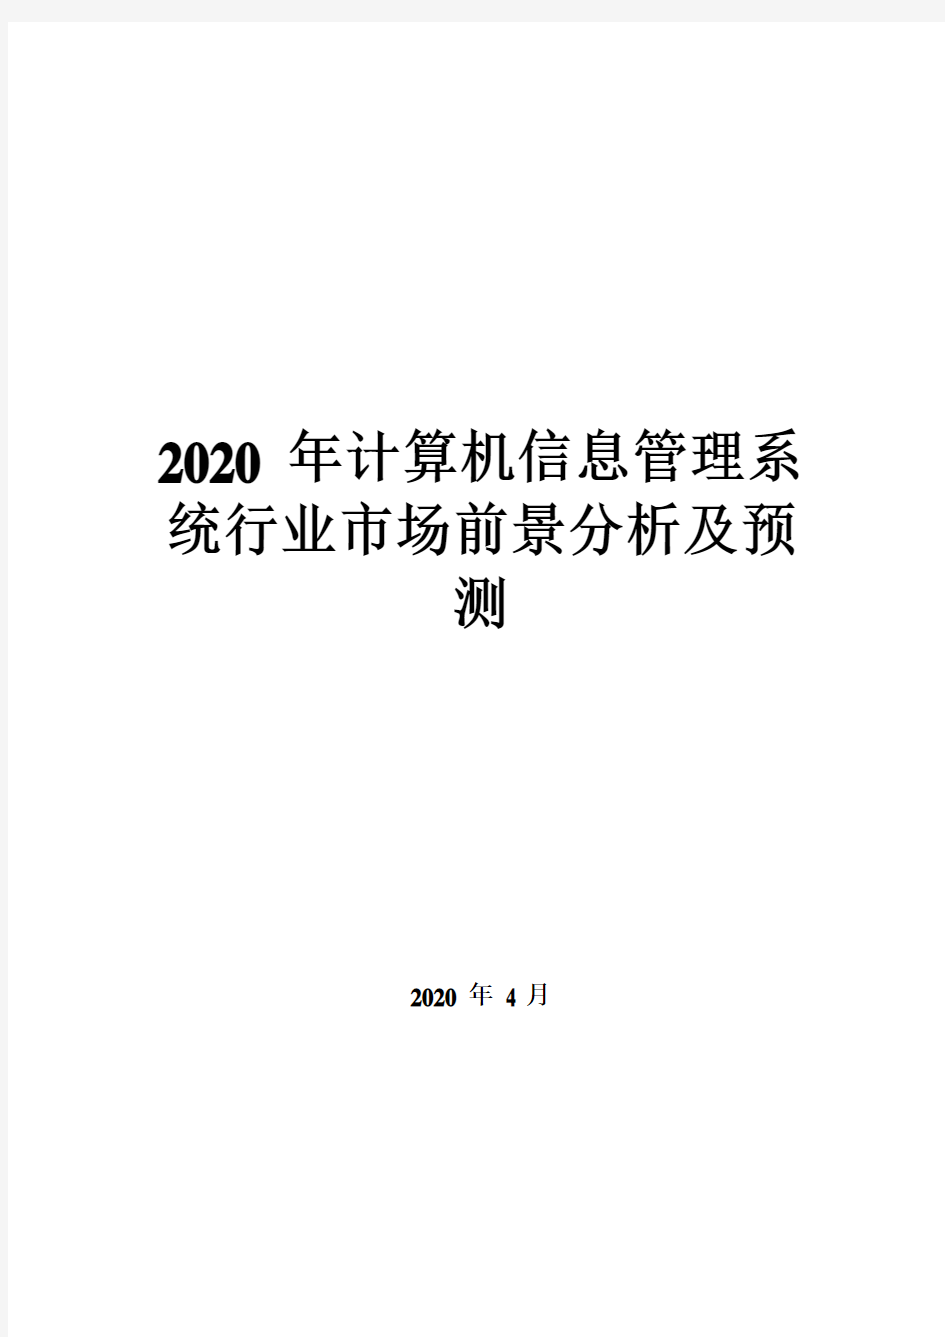 2020年计算机信息管理系统行业市场前景分析及预测